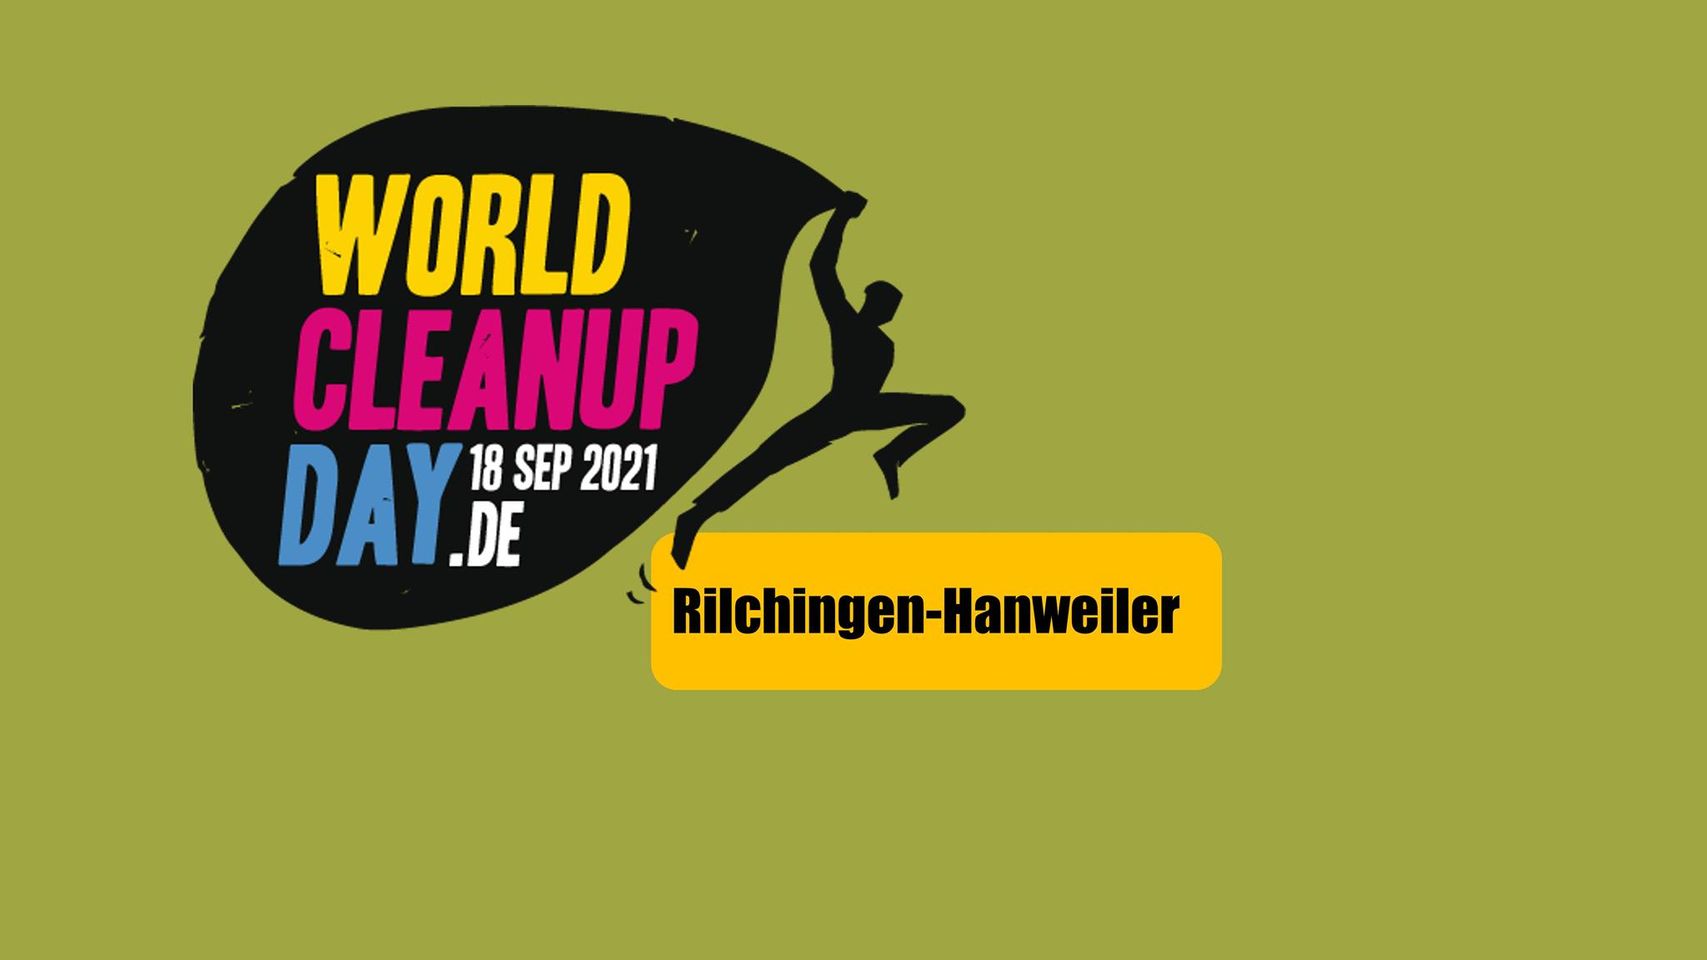 World Cleanup Day in Rilchingen-Hanweiler - (Saarland)